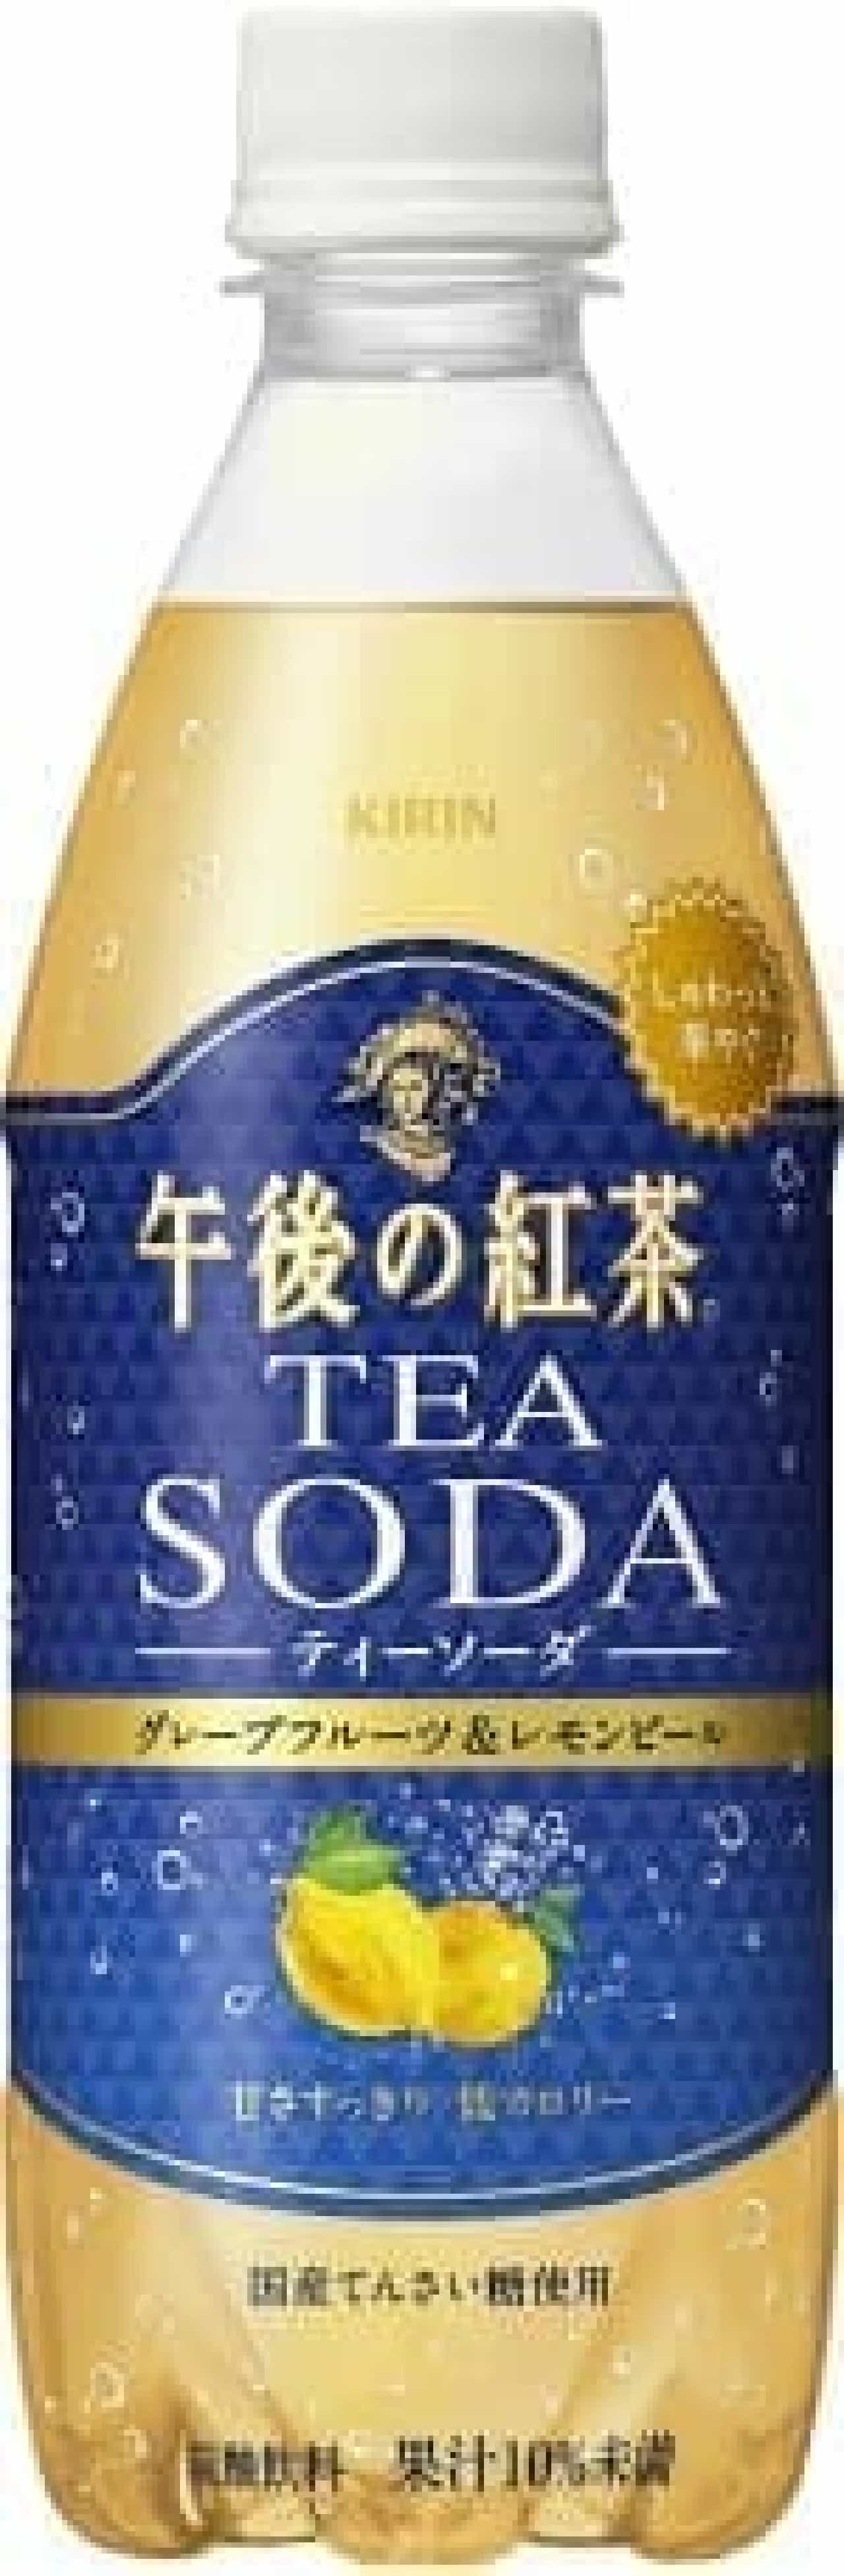 キリン 午後の紅茶 TEA SODA グレープフルーツ＆レモンピール